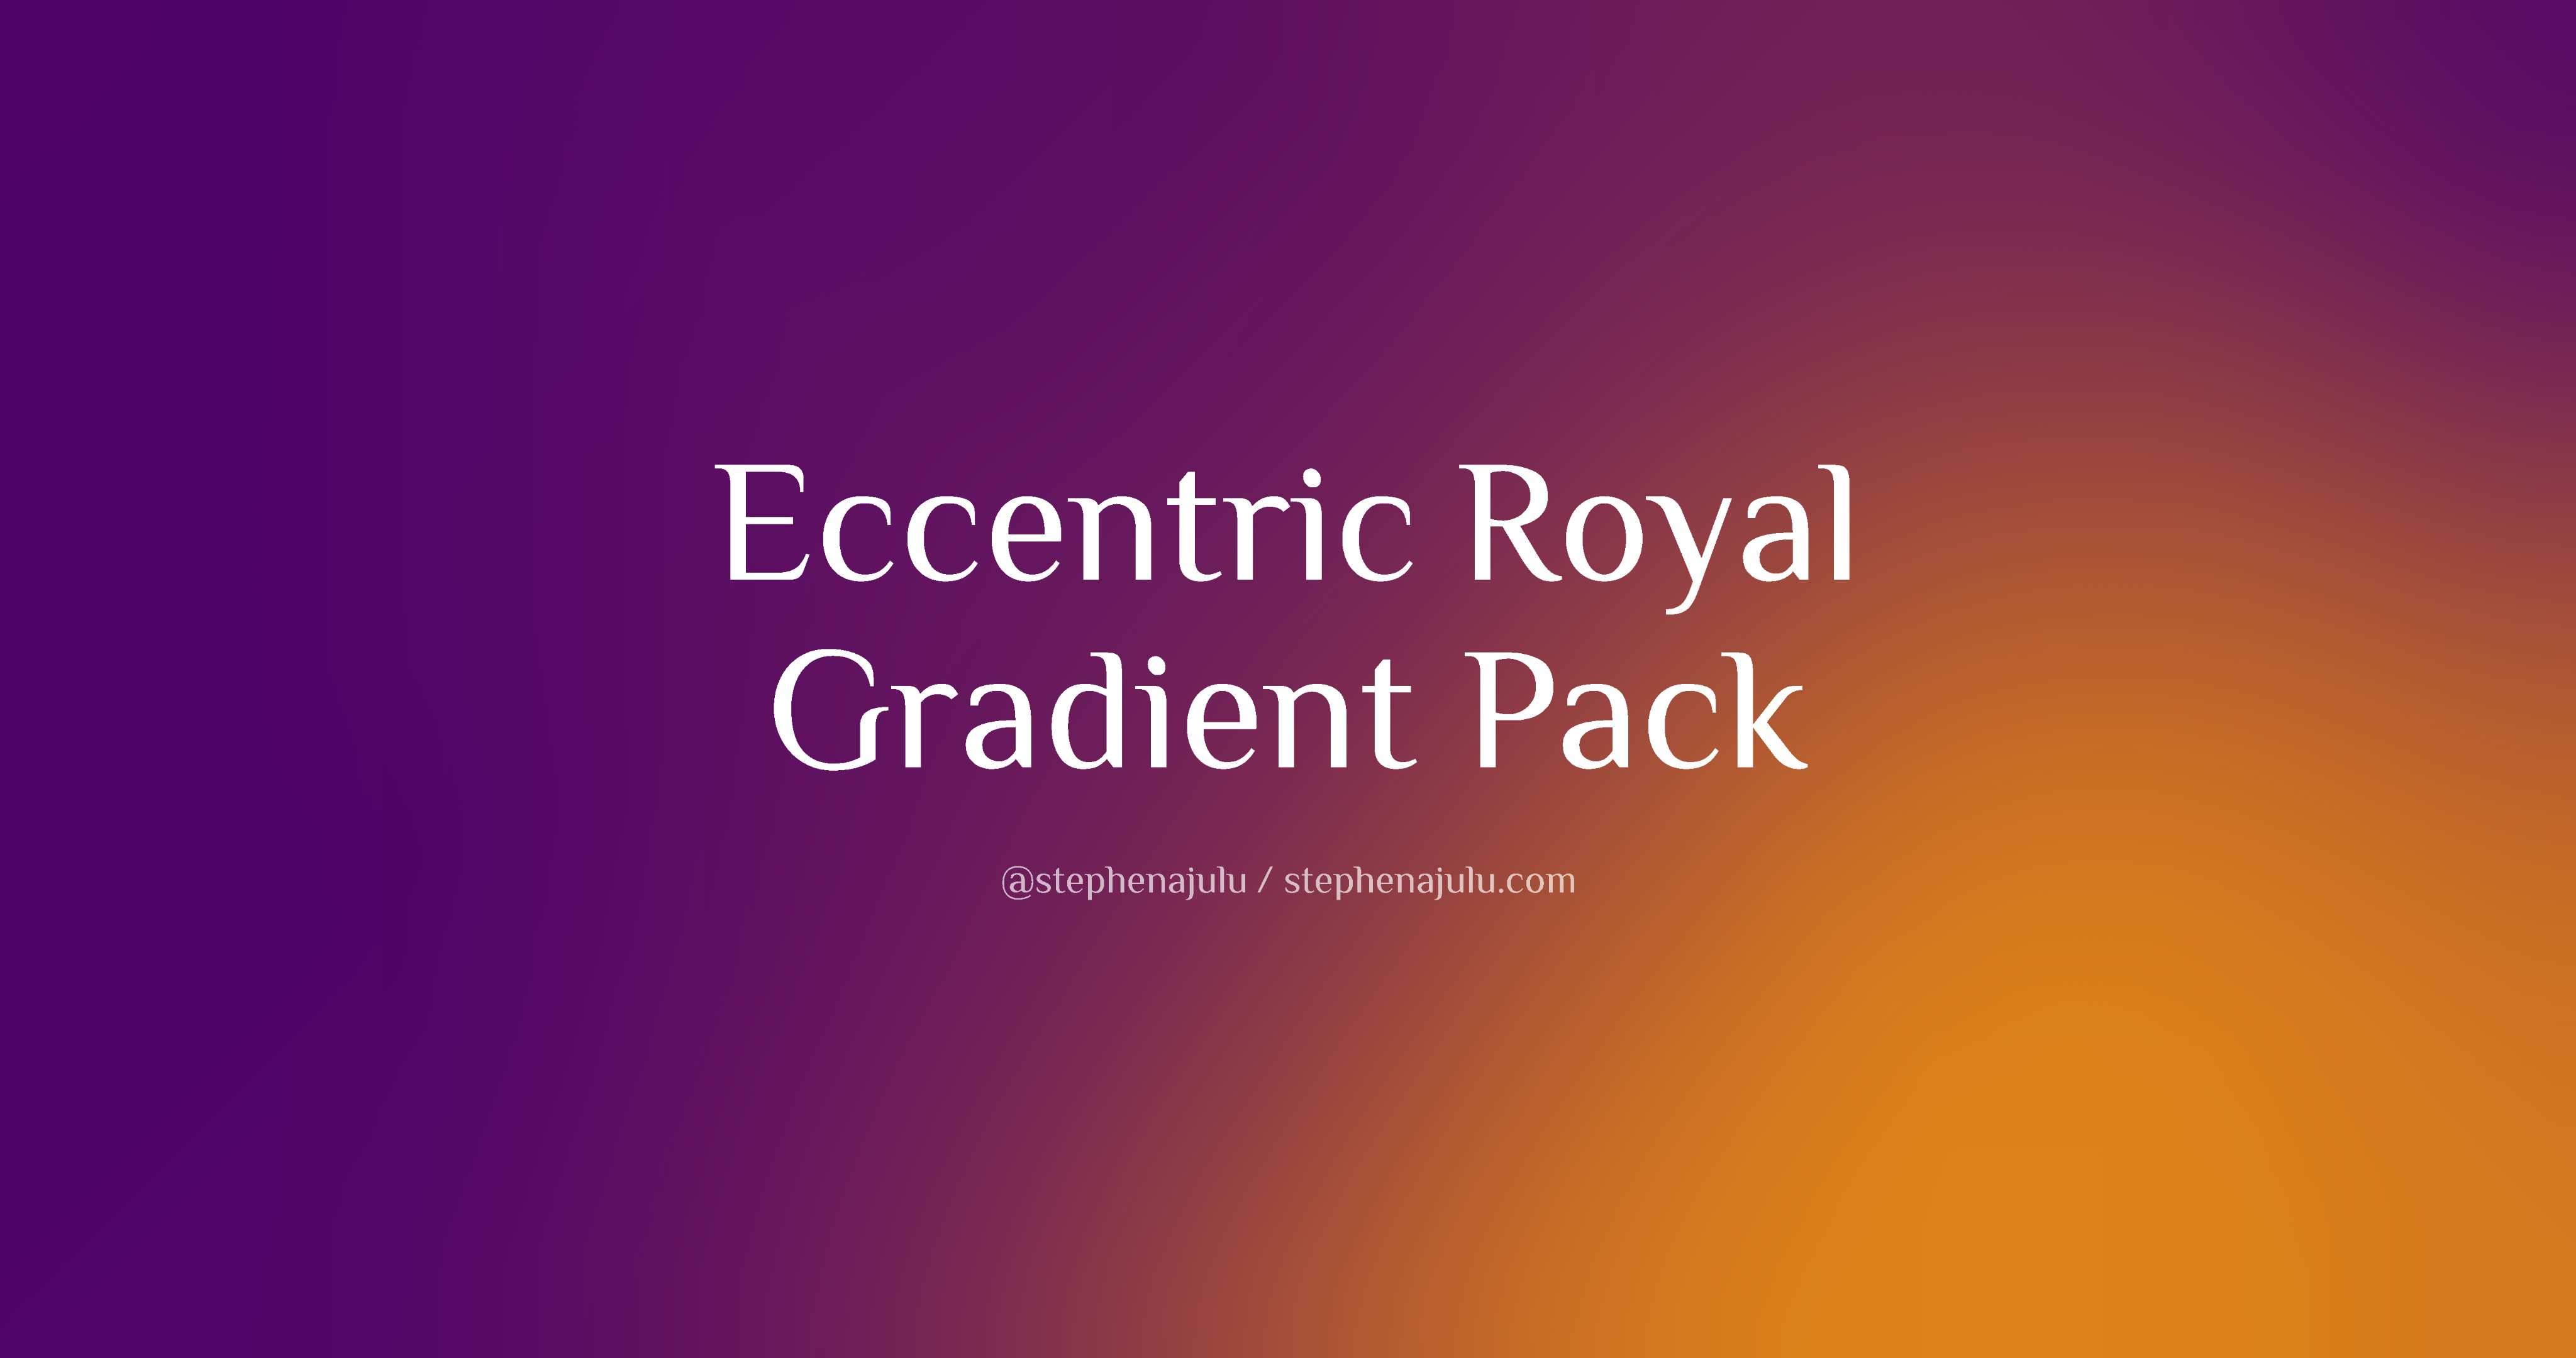 Eccentric Royal 4K Gradient Blur Wallpaper Pack feature-image